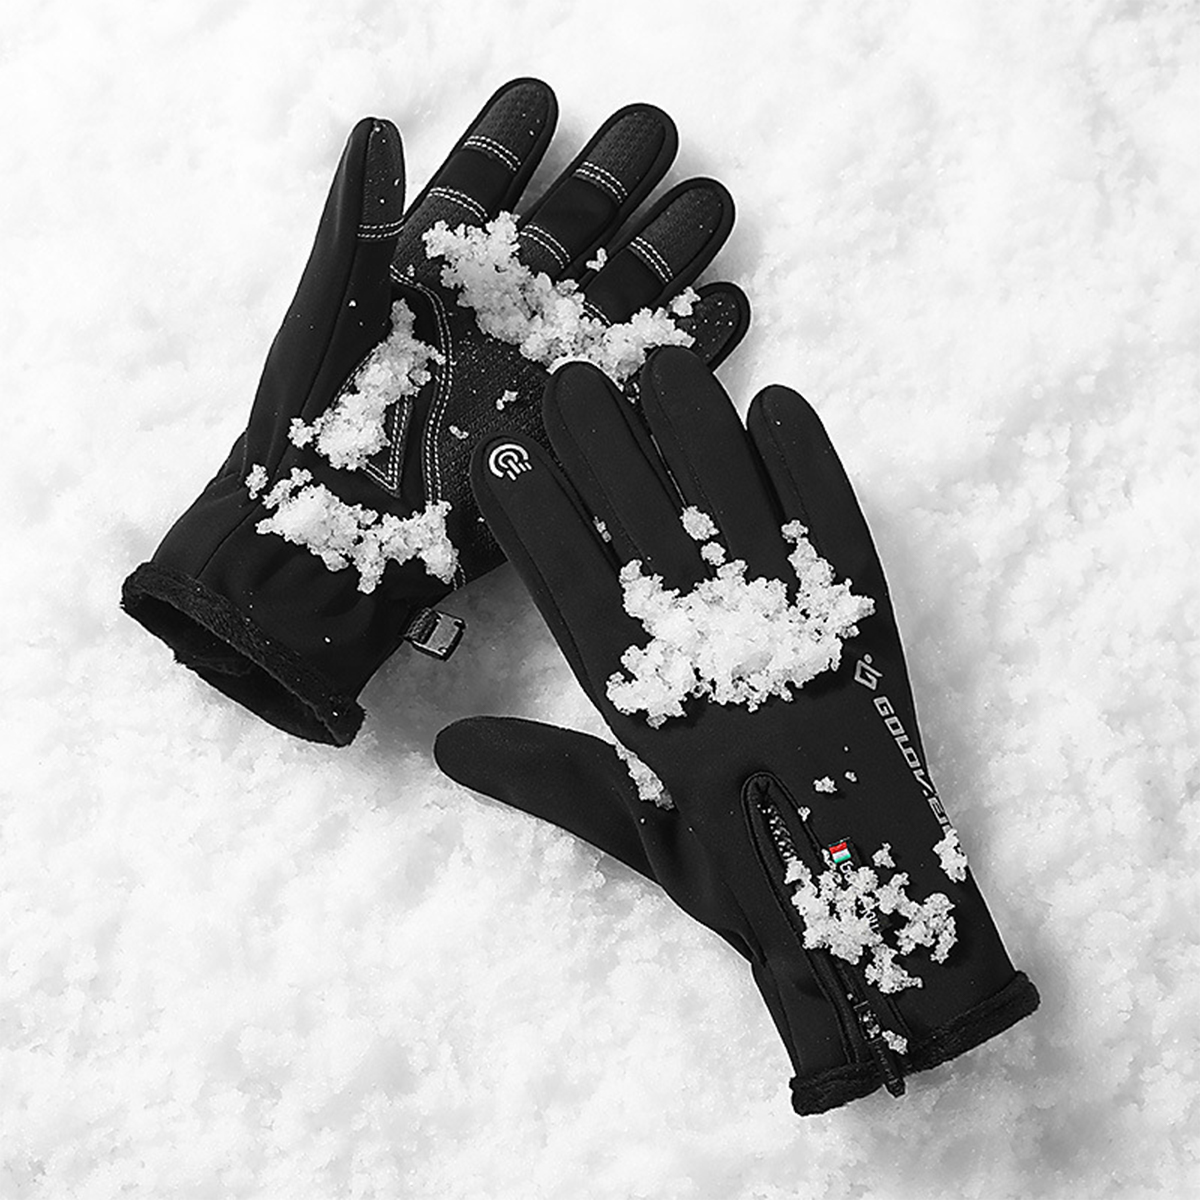 Outdoor Waterproof Gloves